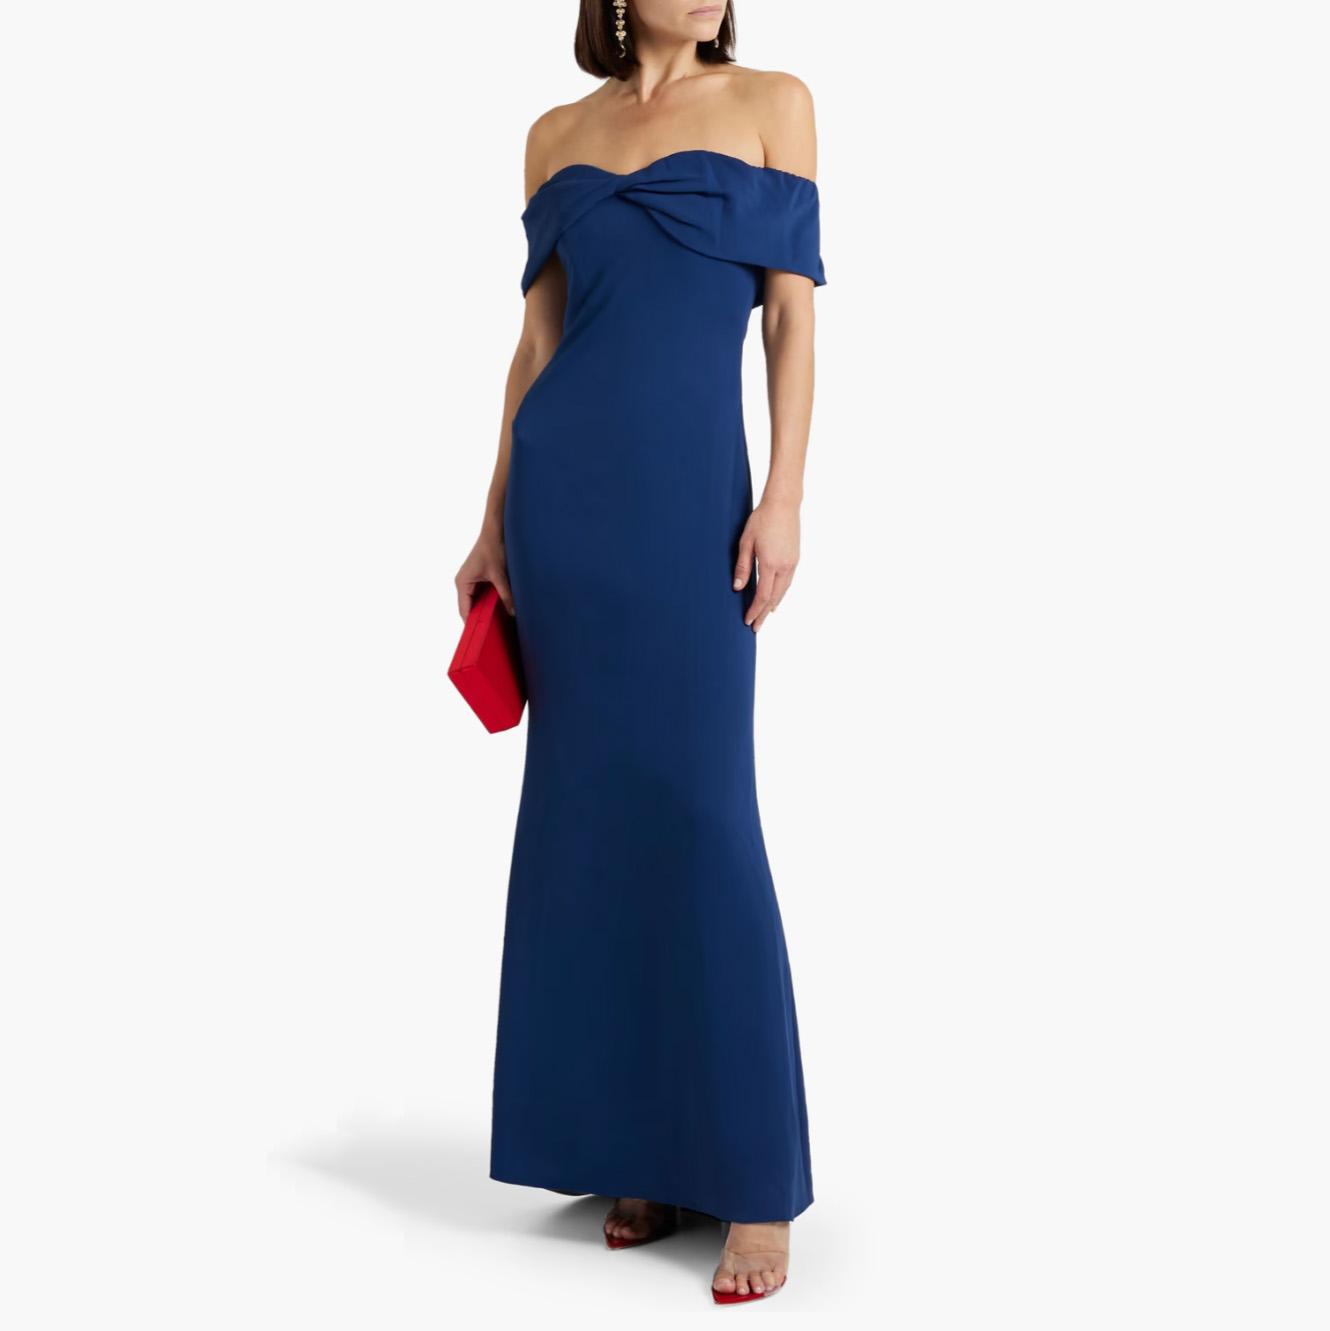 Blue off-shoulder evening gown